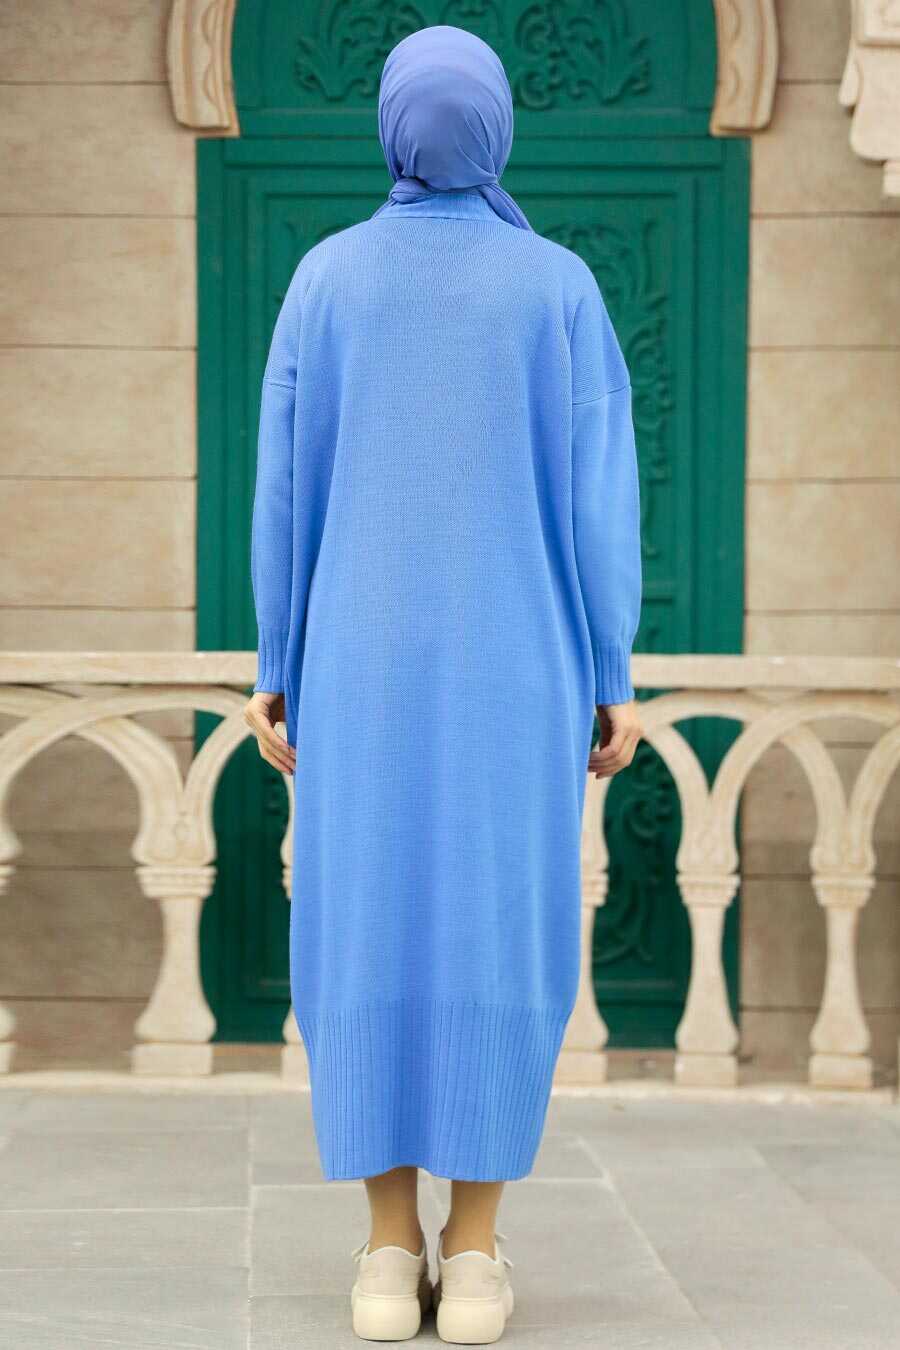 Neva Style - Blue Long Dress for Muslim Ladies Knitwear Dress 3409M